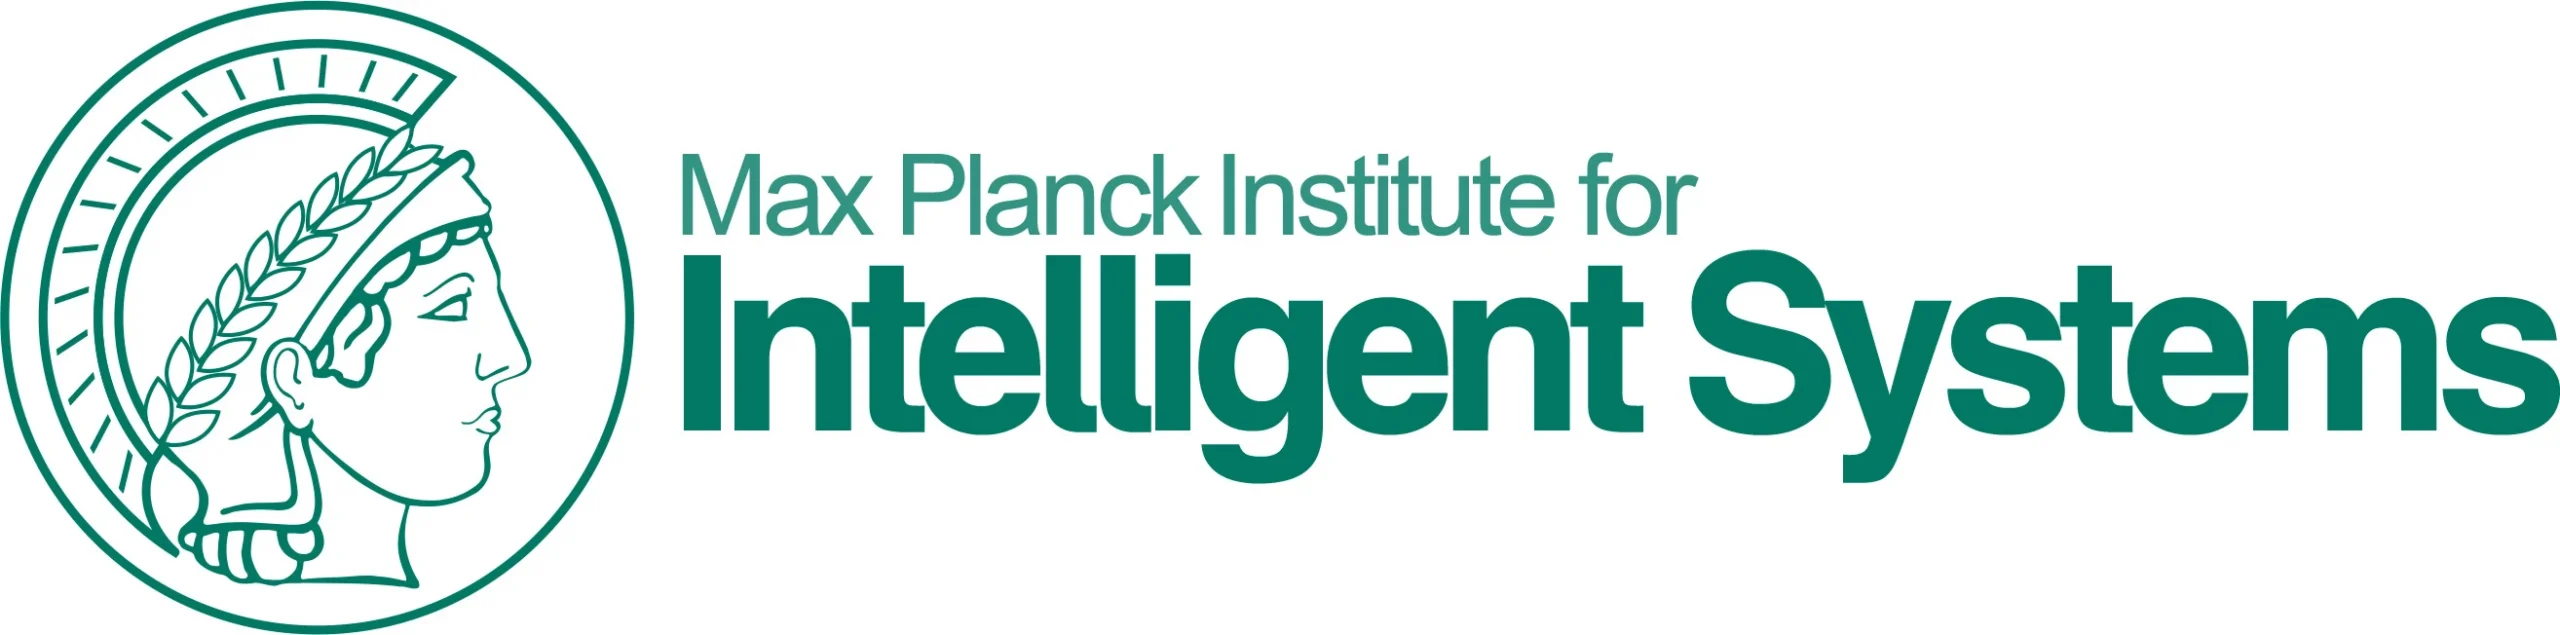 logo-max-planck-institut